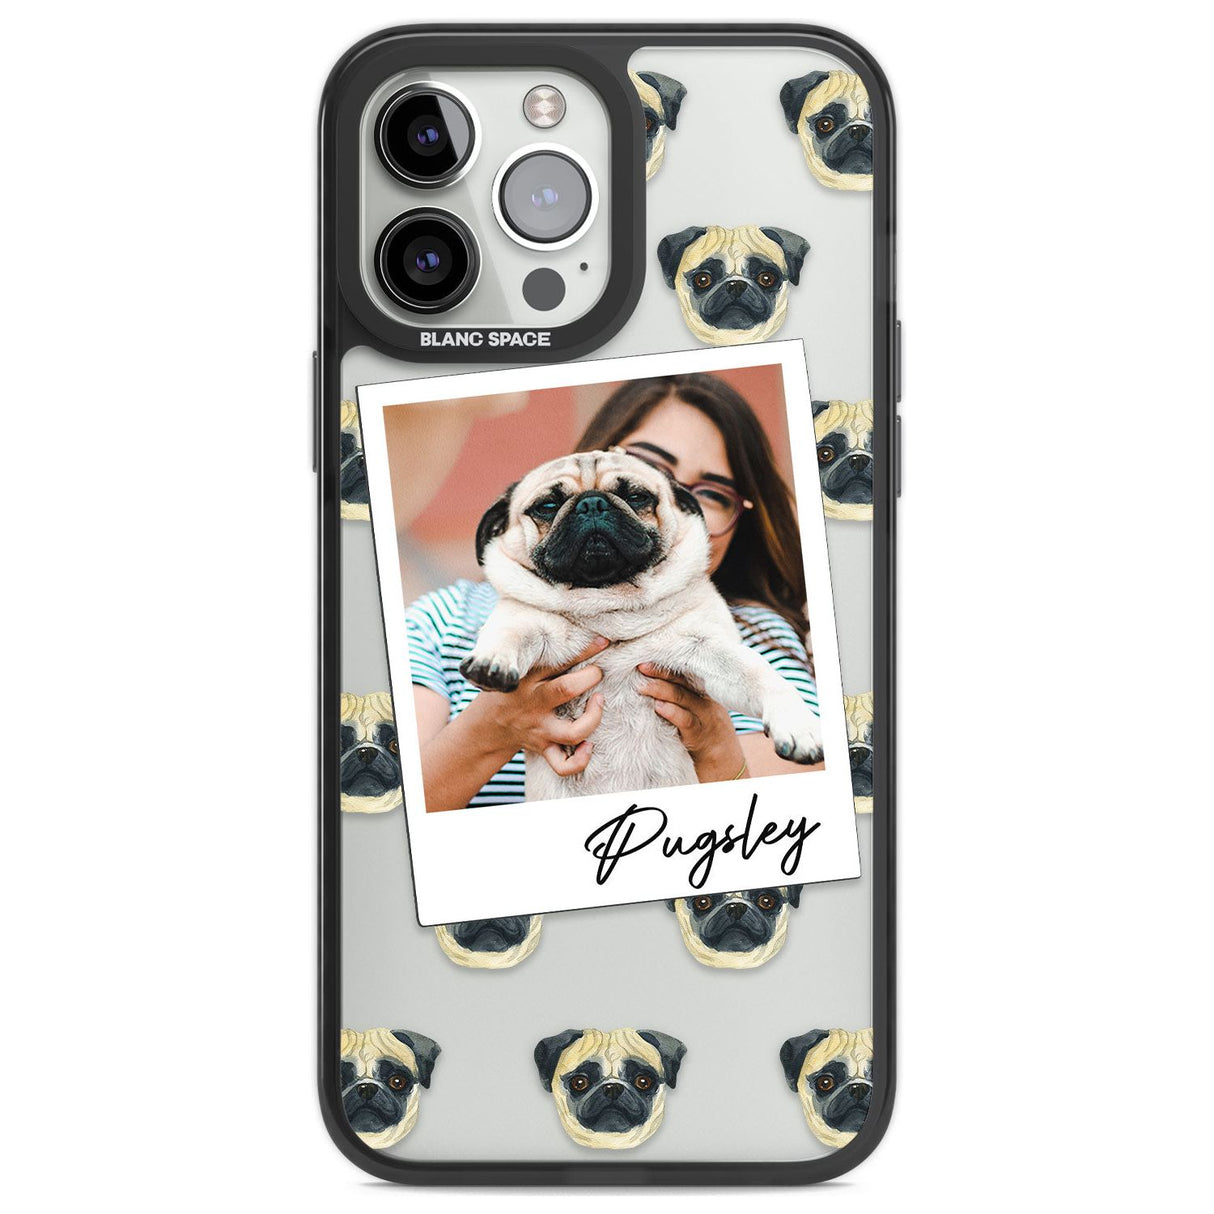 Personalised Pug - Dog Photo Custom Phone Case iPhone 13 Pro Max / Black Impact Case,iPhone 14 Pro Max / Black Impact Case Blanc Space